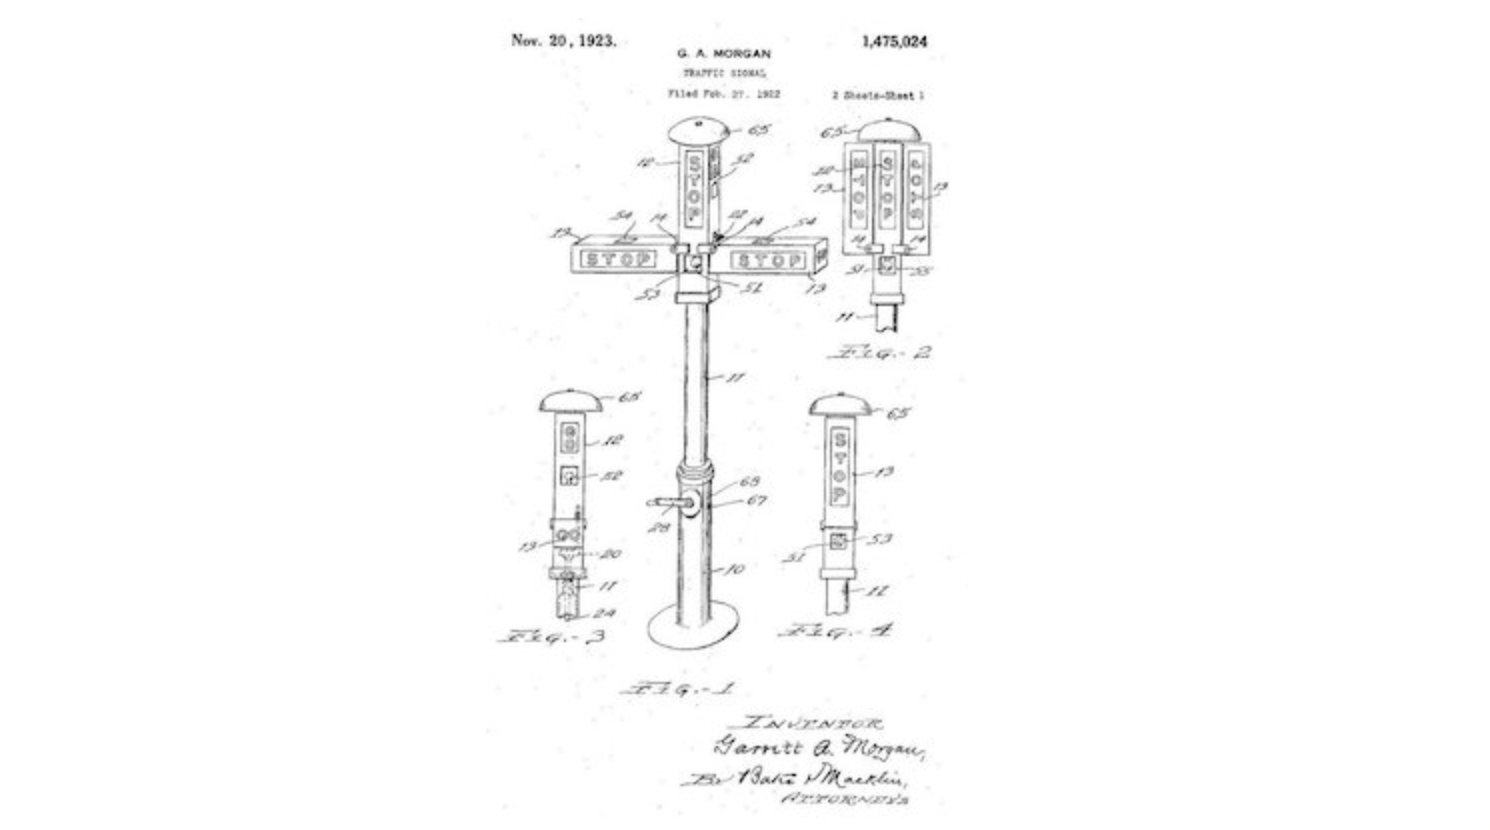 Patent drawing for Garrett A. Morgan's traffic signal